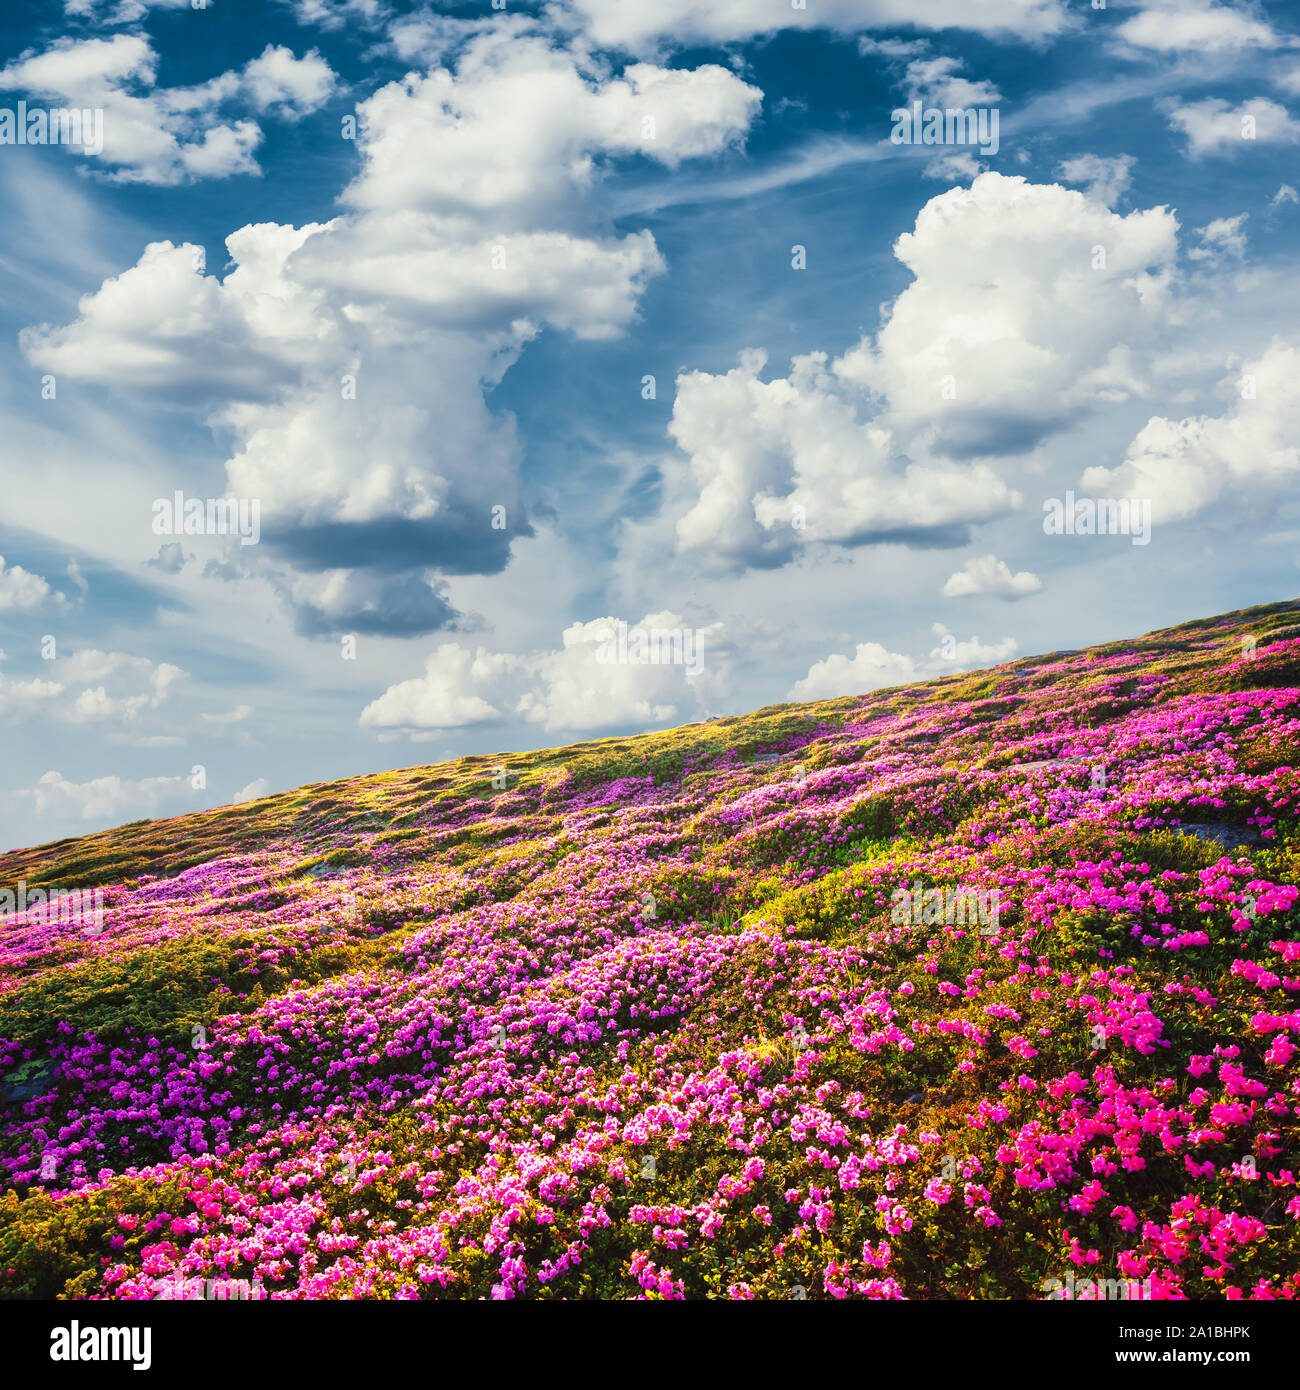 Super Sommer sonnige Landschaft mit flauschigen Wolken im blauen Himmel und blühende rosa Rhododendron Blumen bedeckten Bergen Hügel rund um Stockfoto